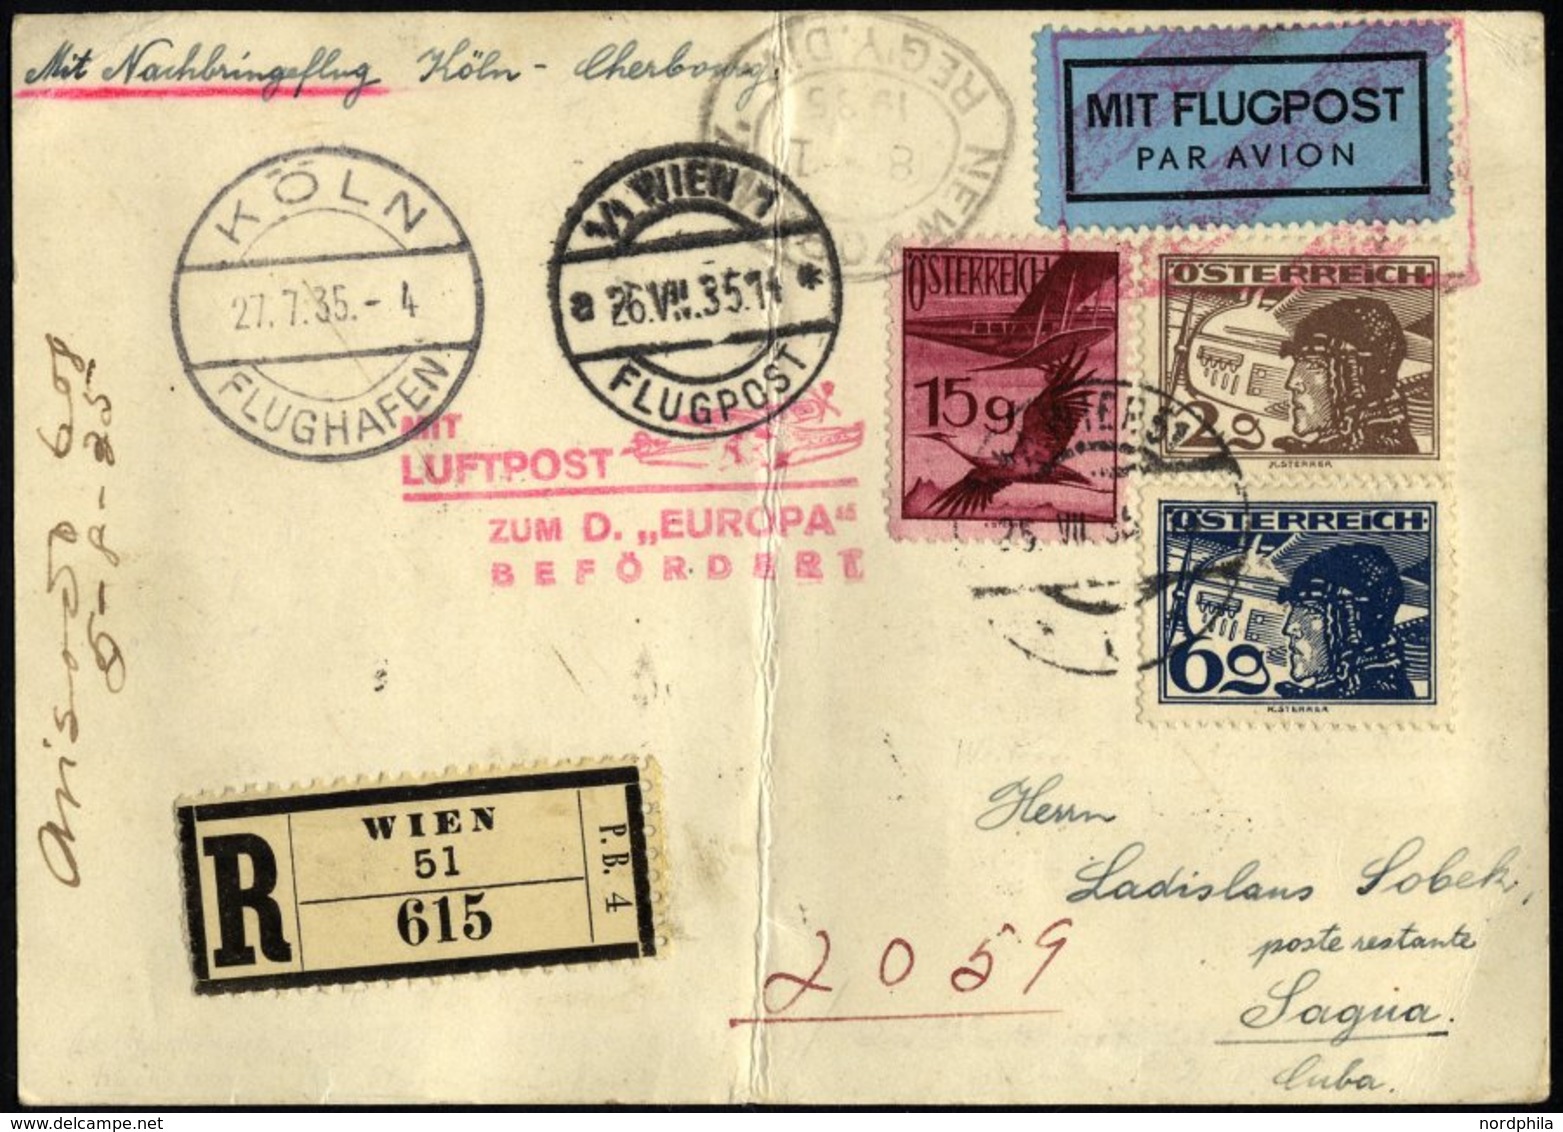 FLUGPOST BIS 1938 97 BRIEF, 27.7.1935, Mit Lufpost Zur EUROPA, Nachbringeflug Köln-Cherbourg, Ab Wien Mit österreichisch - Eerste Vluchten